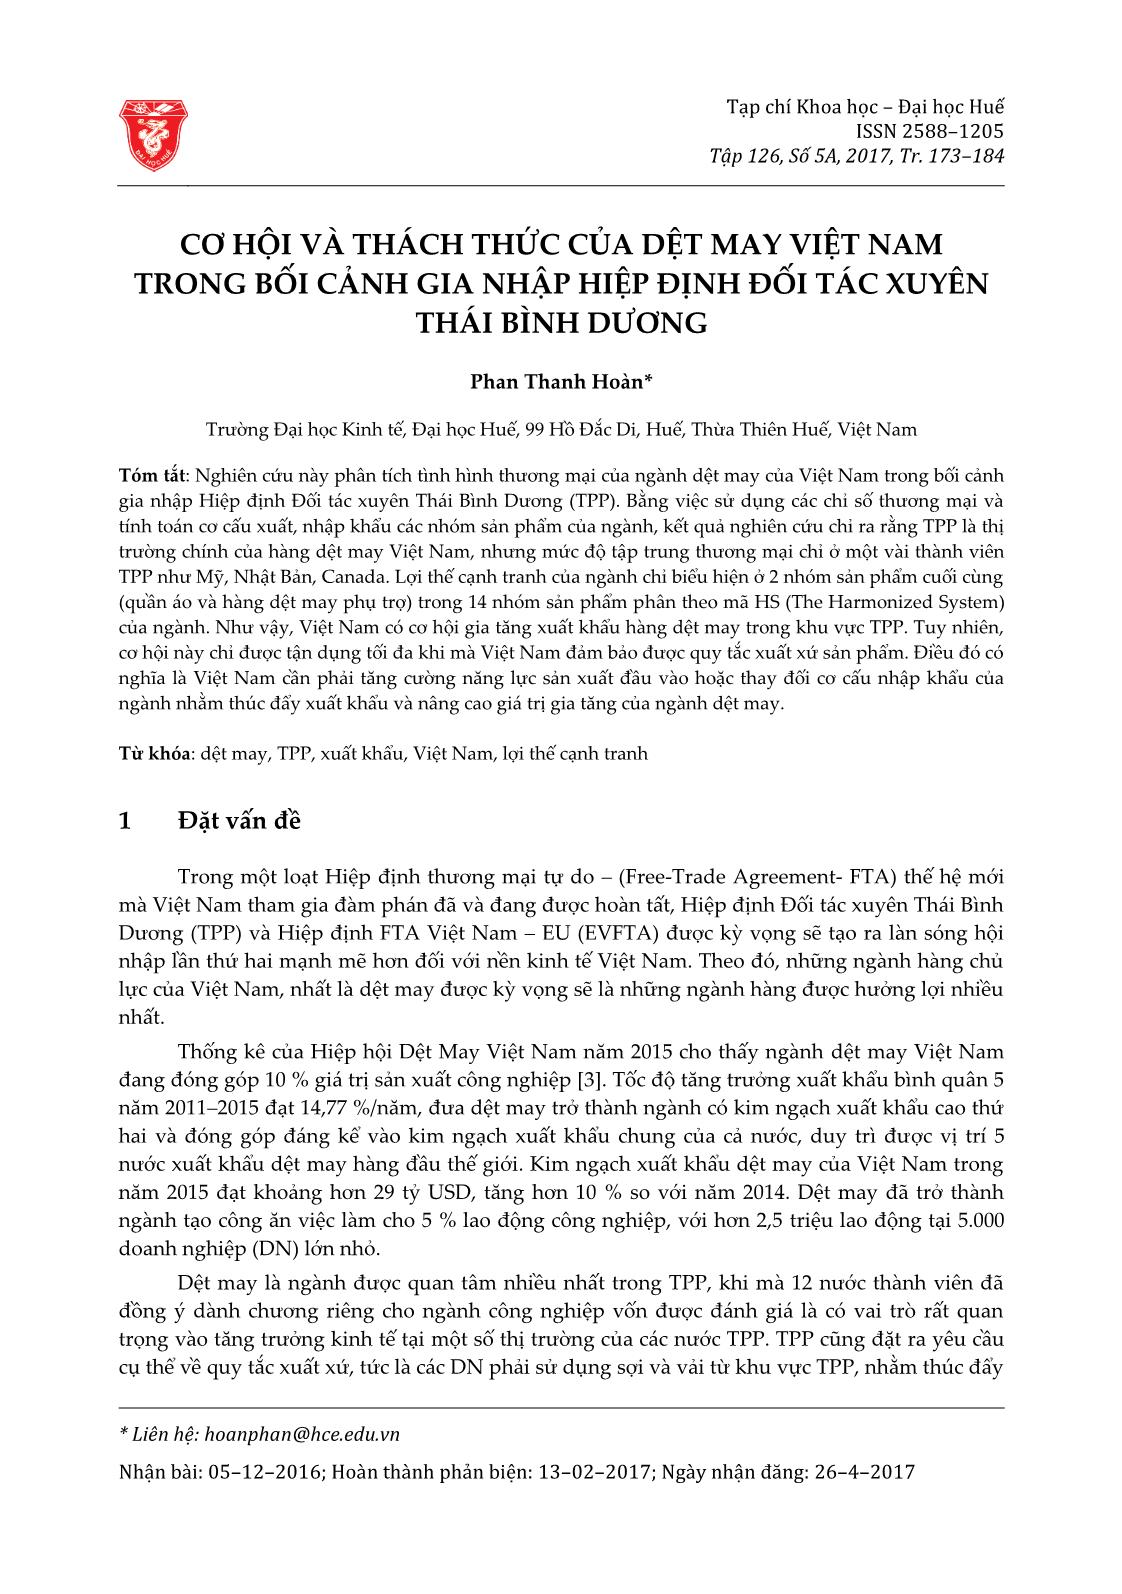 Cơ hội và thách thức của dệt may Việt Nam trong bối cảnh gia nhập hiệp định đối tác xuyên Thái Bình Dương trang 1